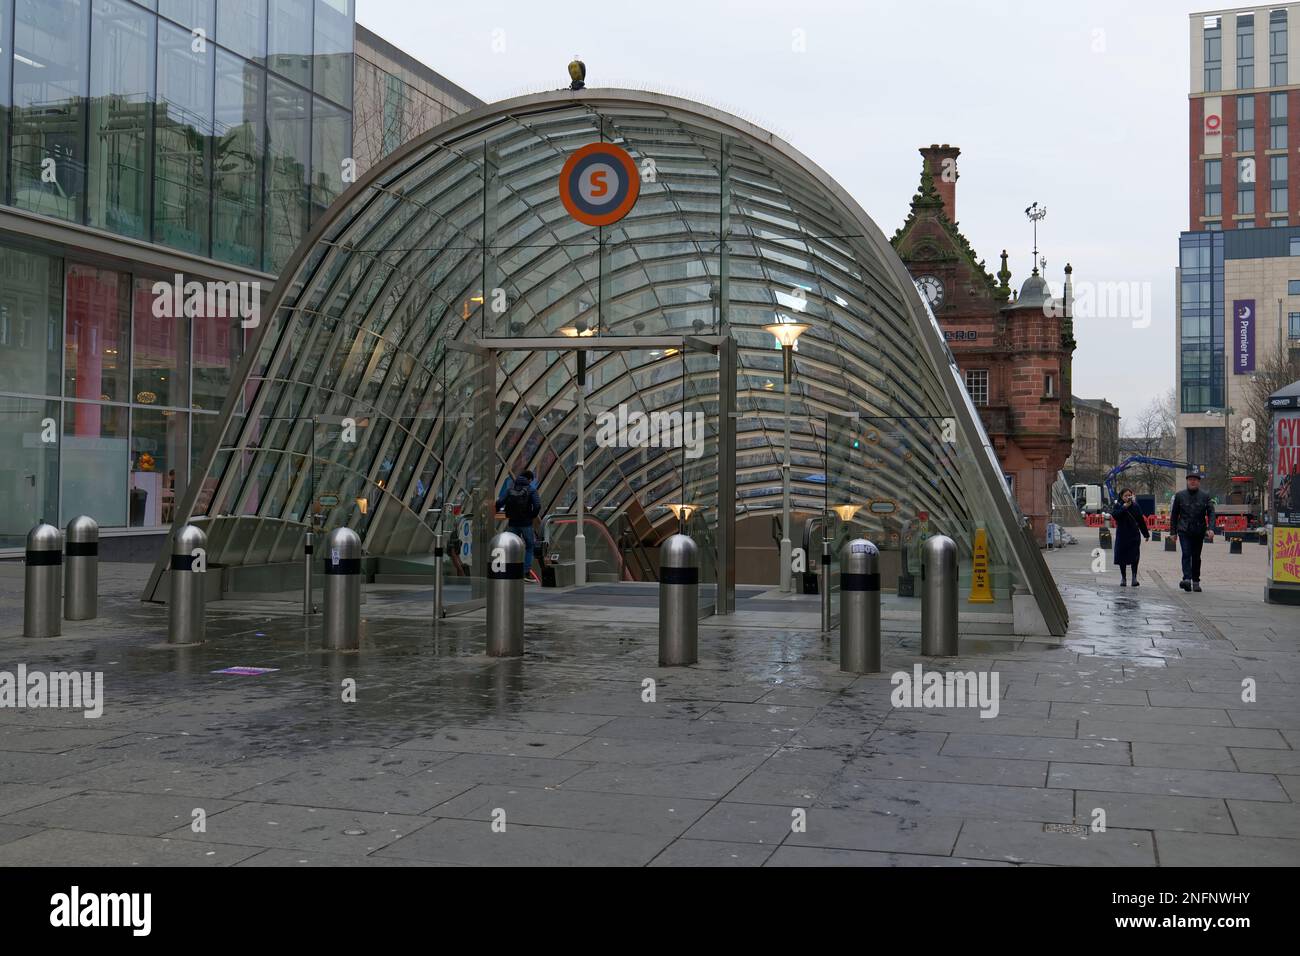 Entrée de la station de métro St Enoch Square, Glasgow, Écosse, Royaume-Uni Banque D'Images